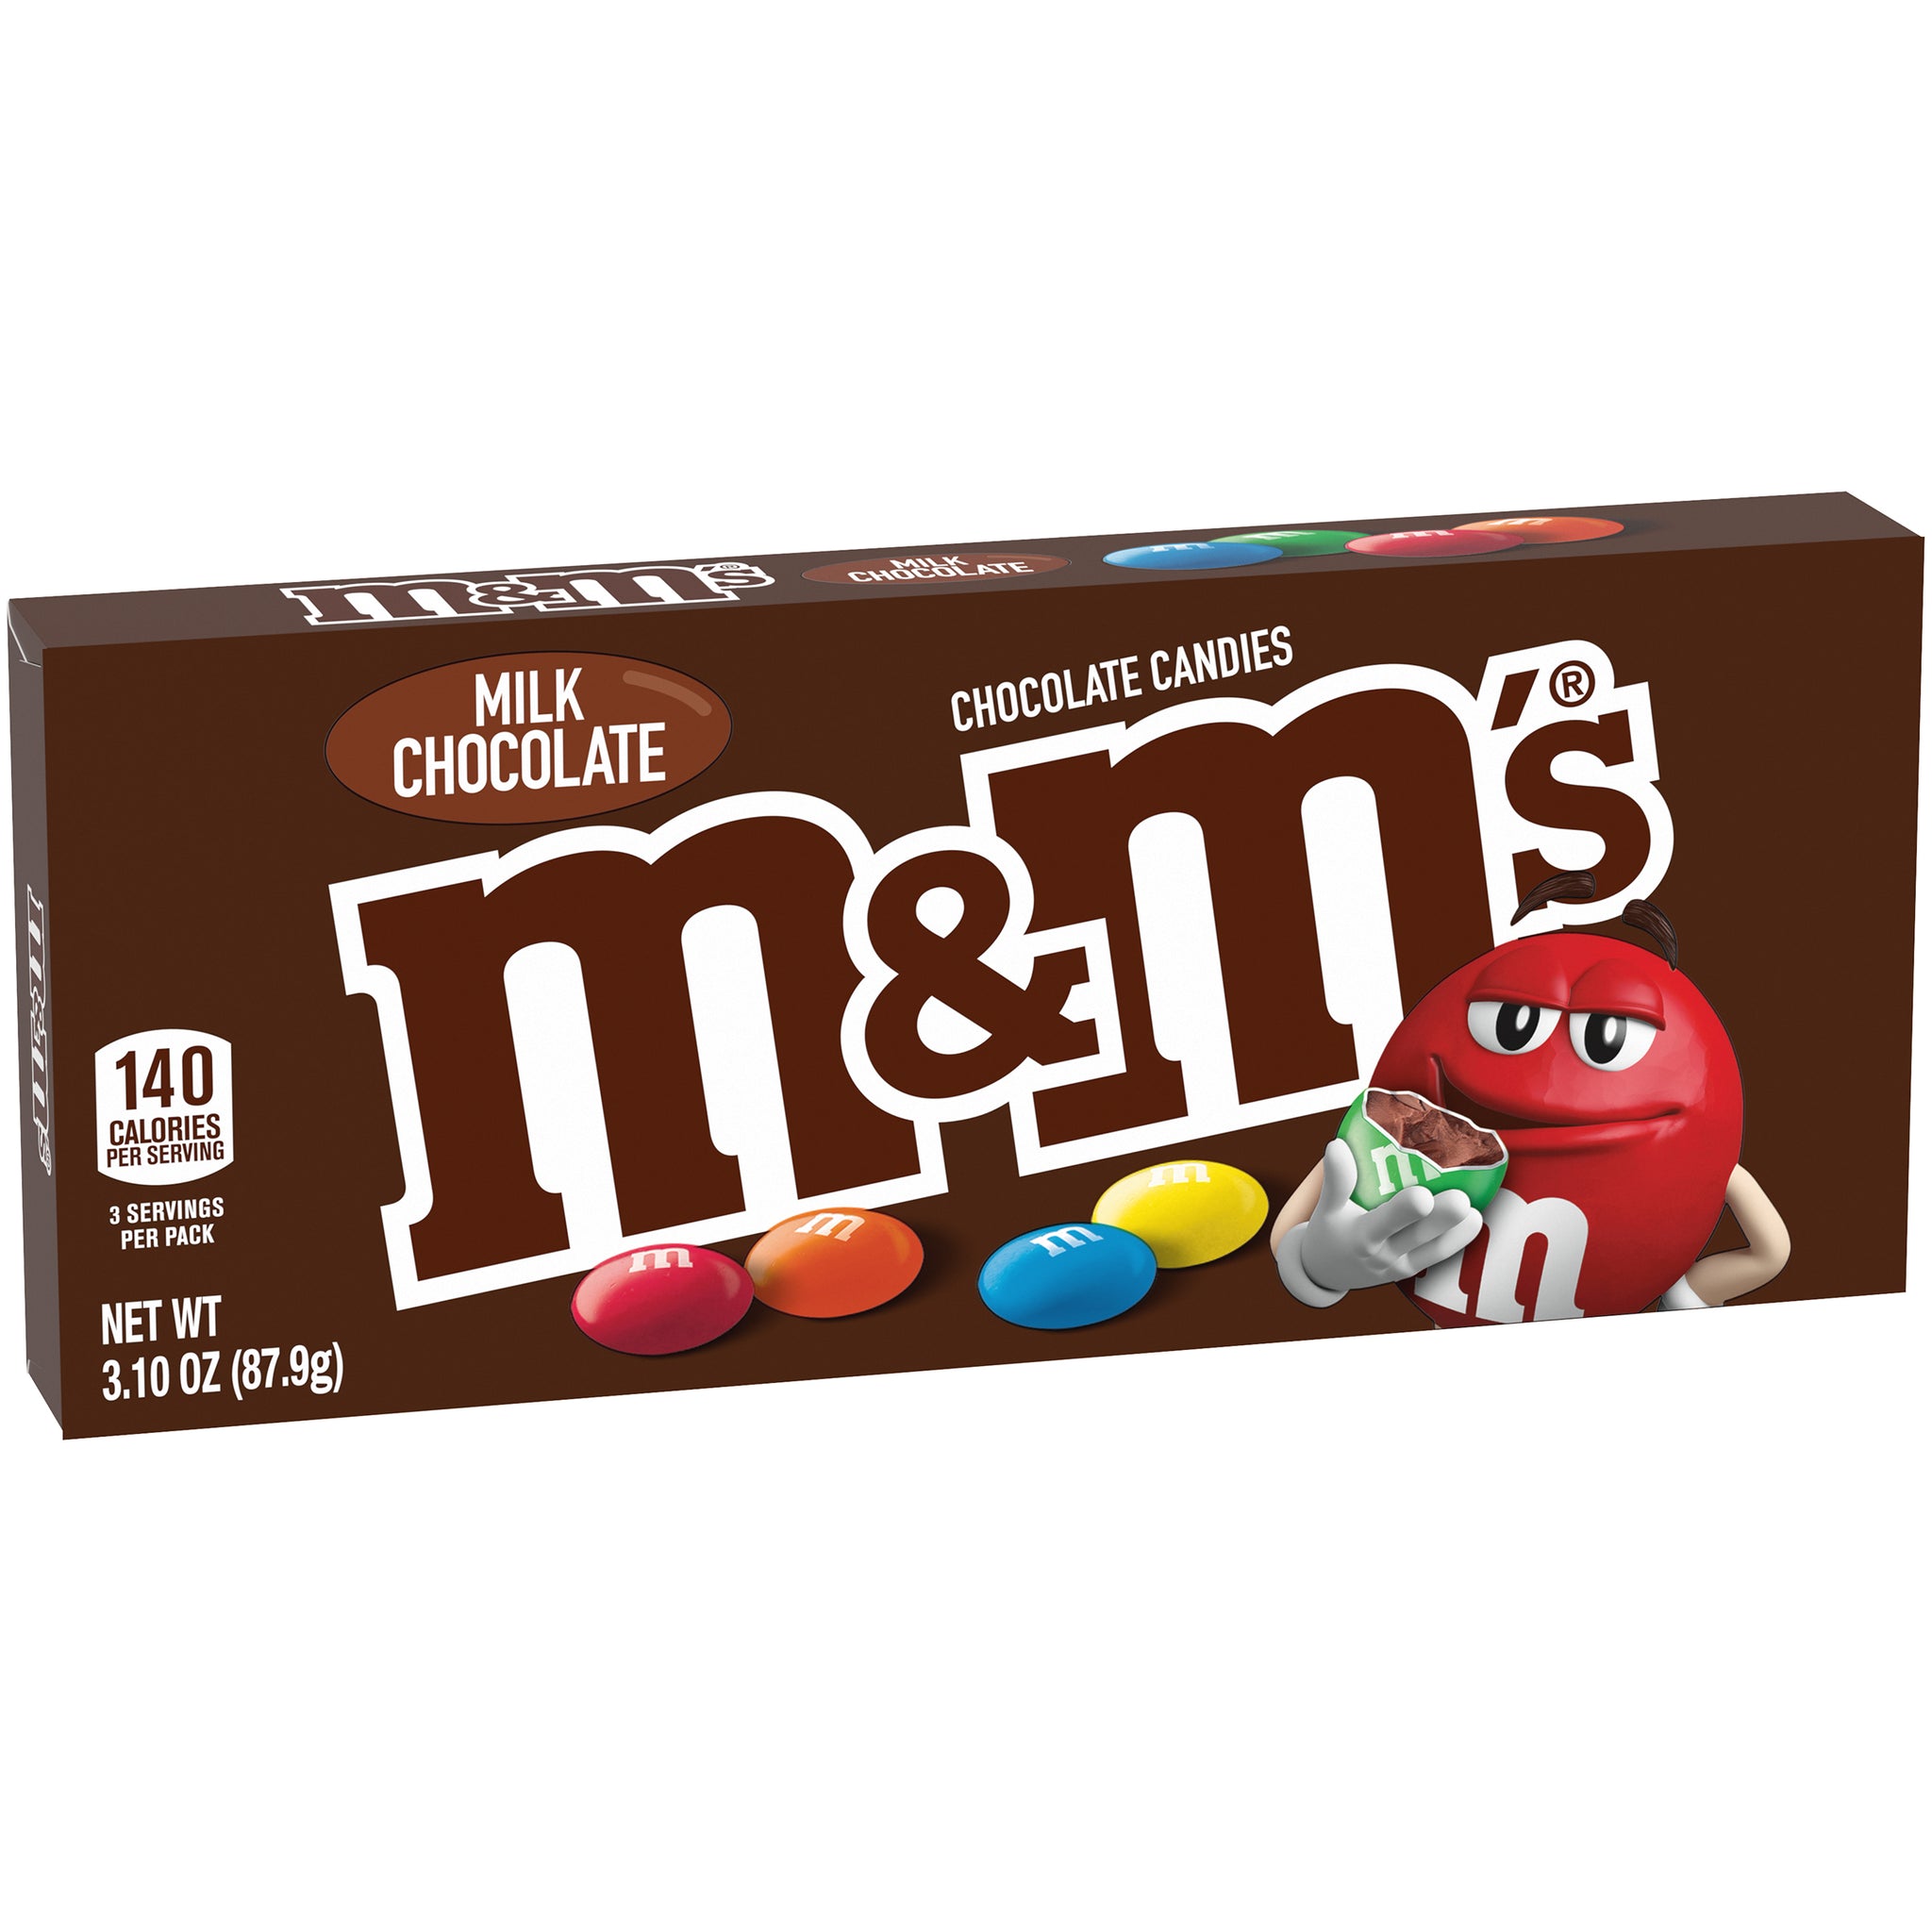 M&M's Valentine Minis - 1.77 oz Tube